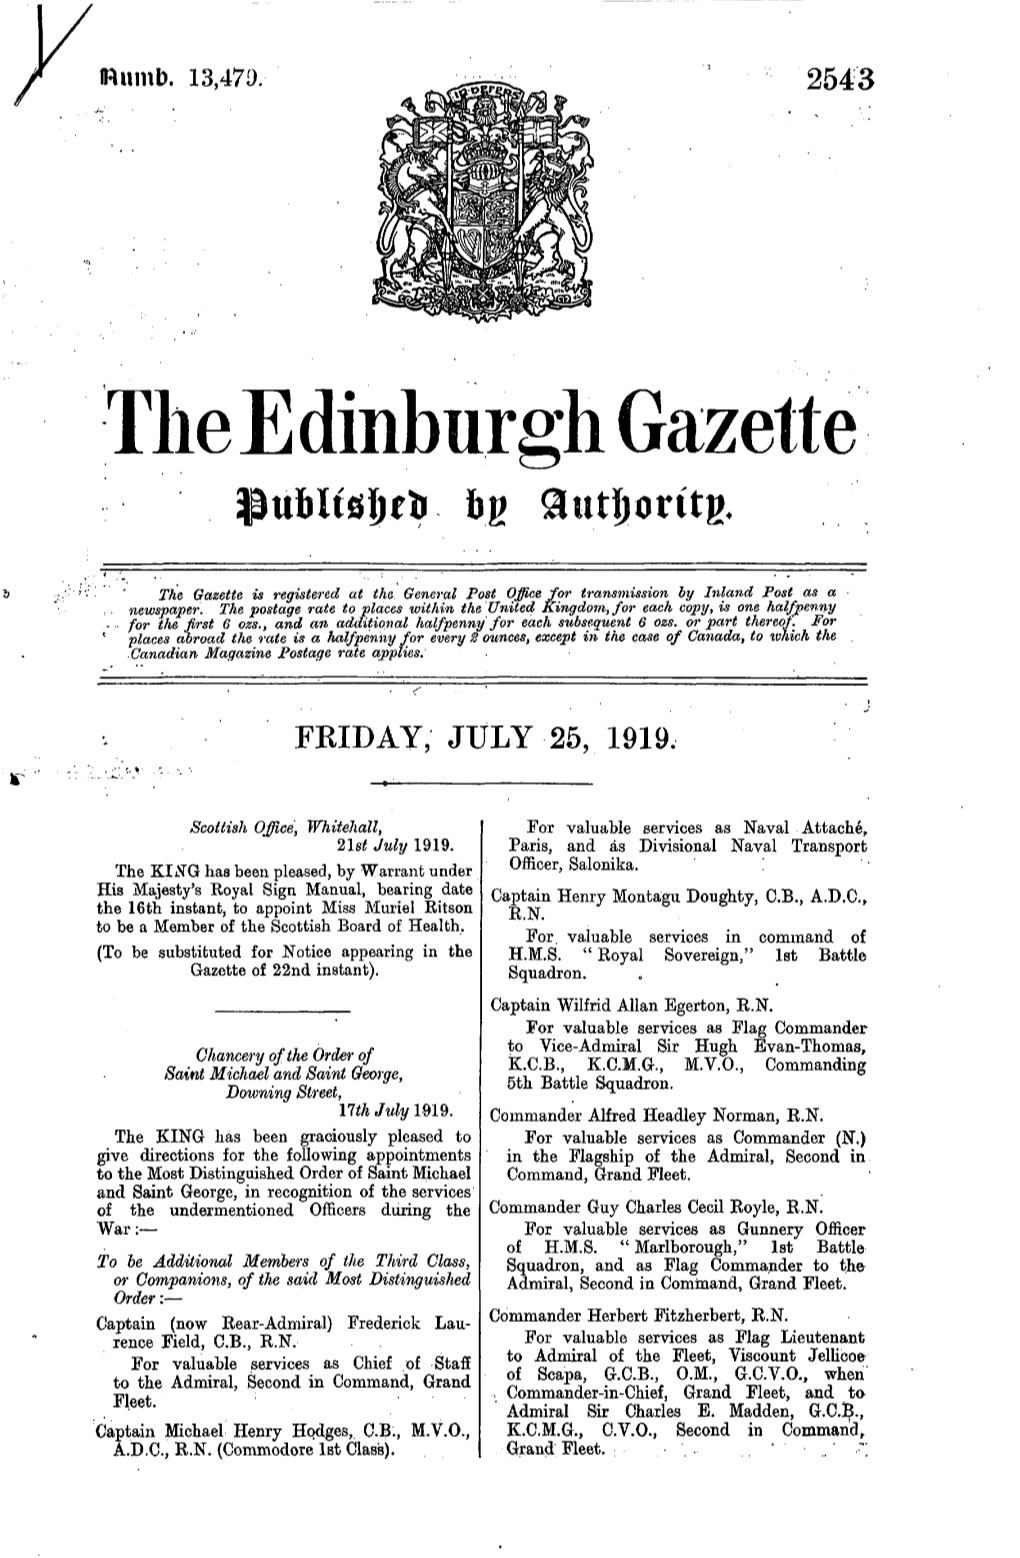 The E Dinburh Gazette